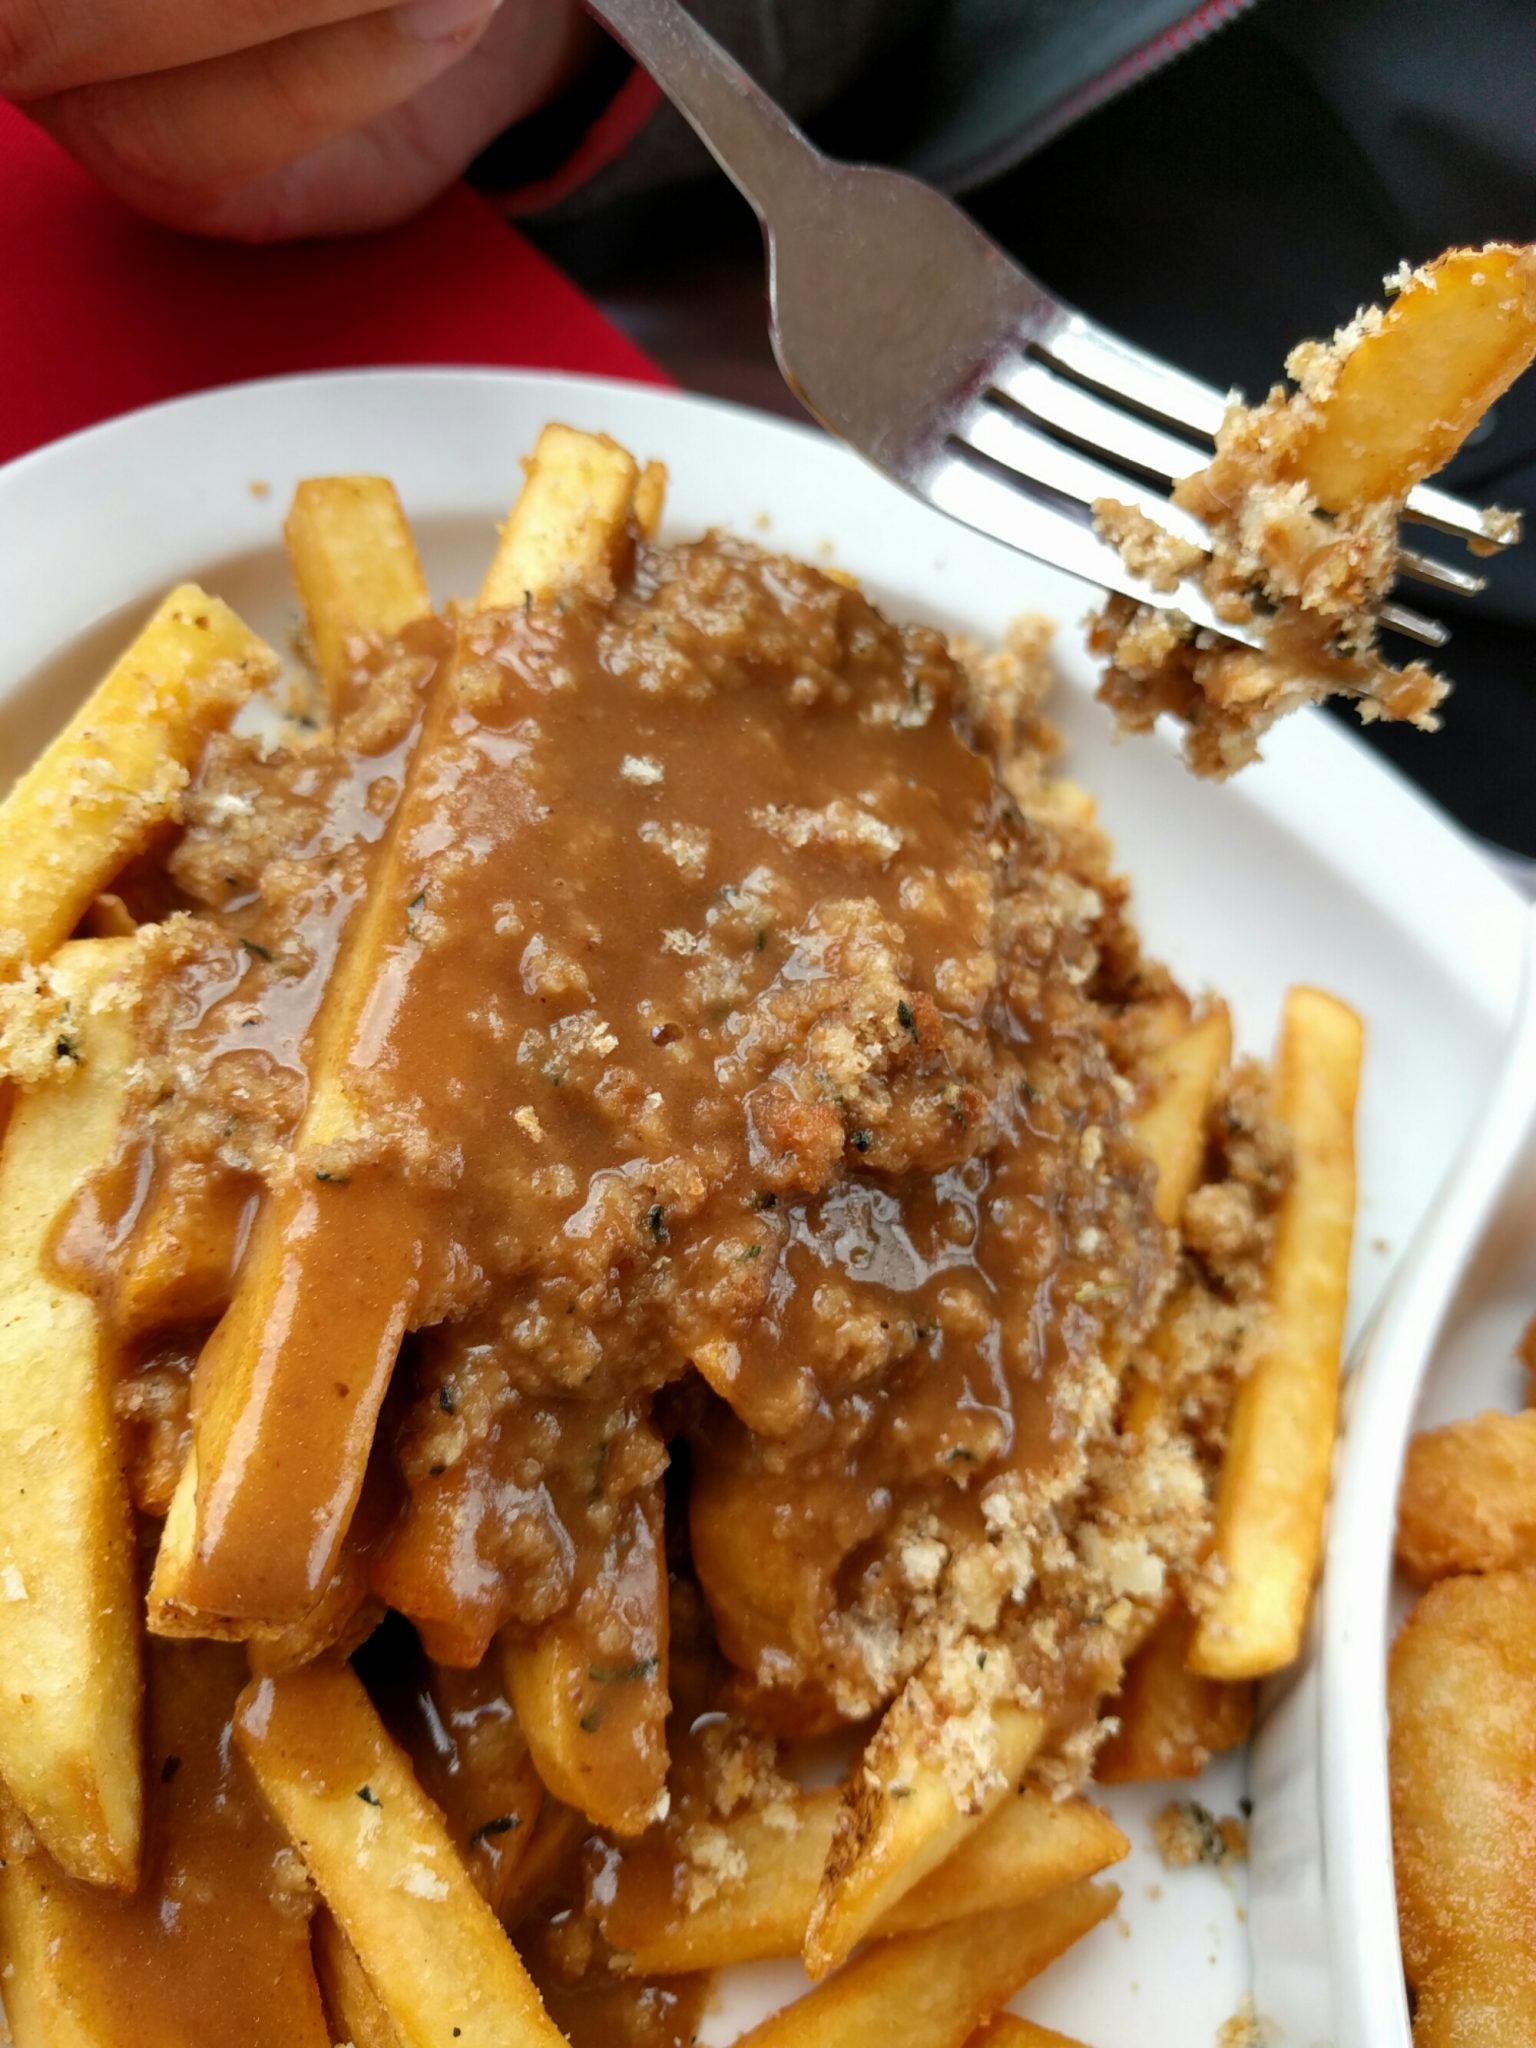 Newfoundland-style fries